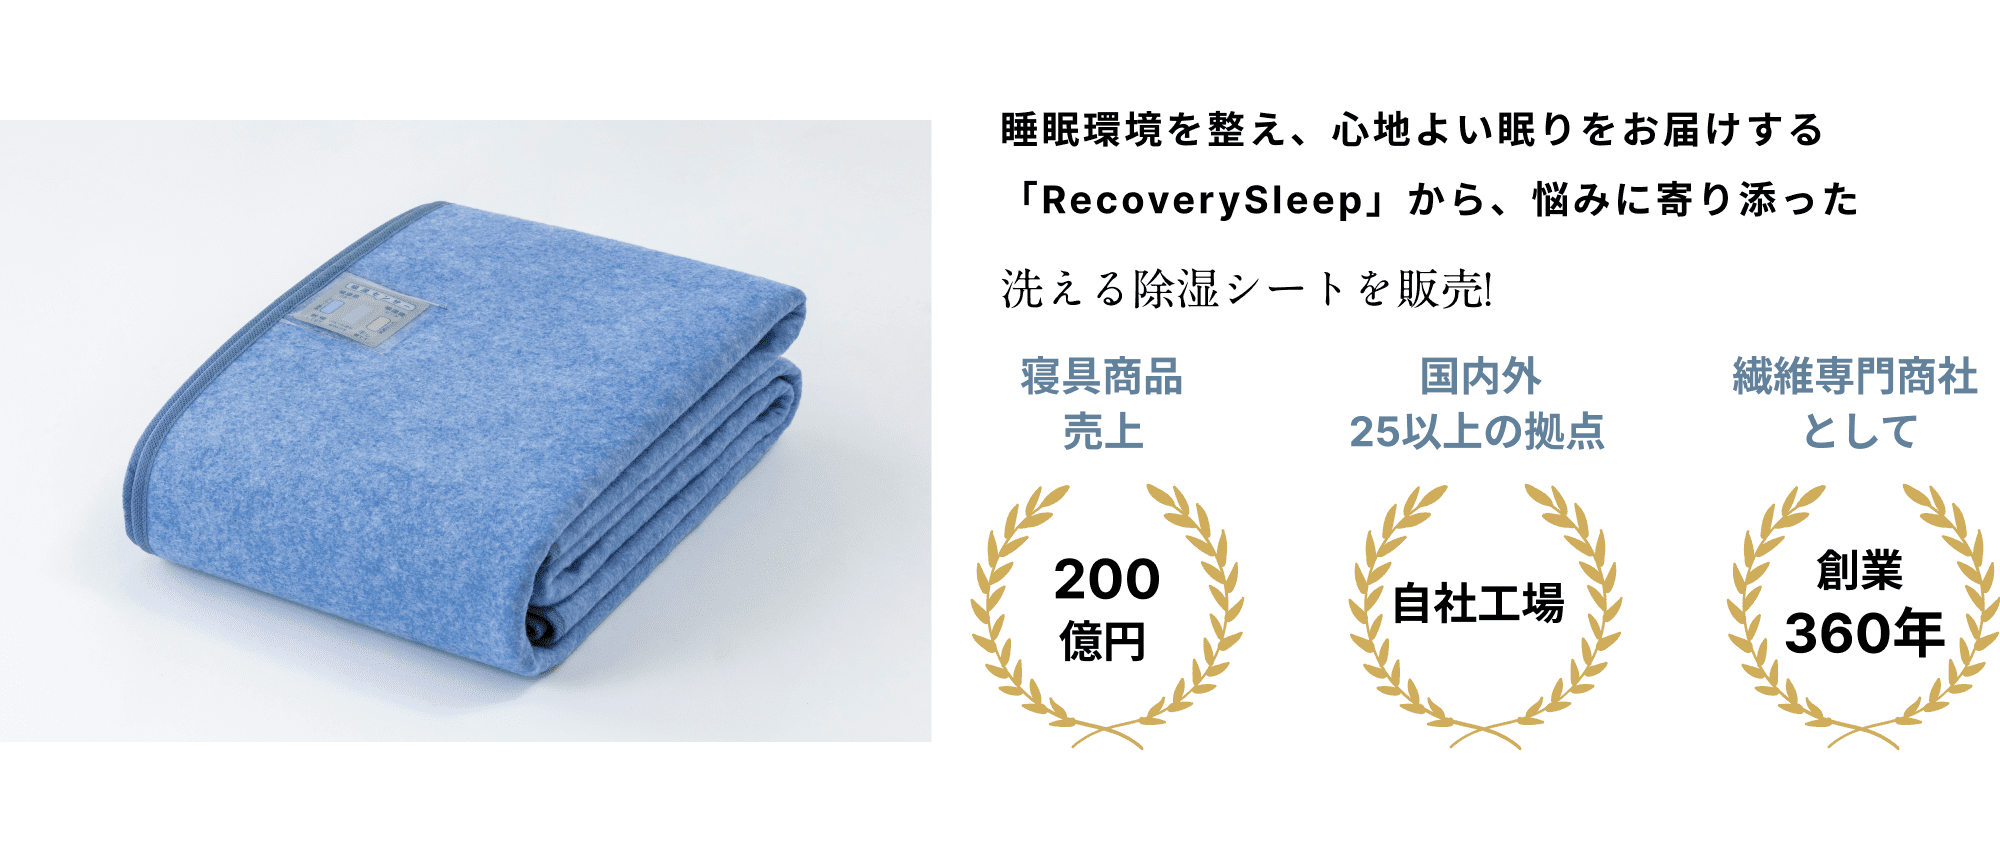 睡眠環境を整え、心地よい眠りをお届けする「RecoverySleep」から、悩みに寄り添った洗える除湿シートを販売!